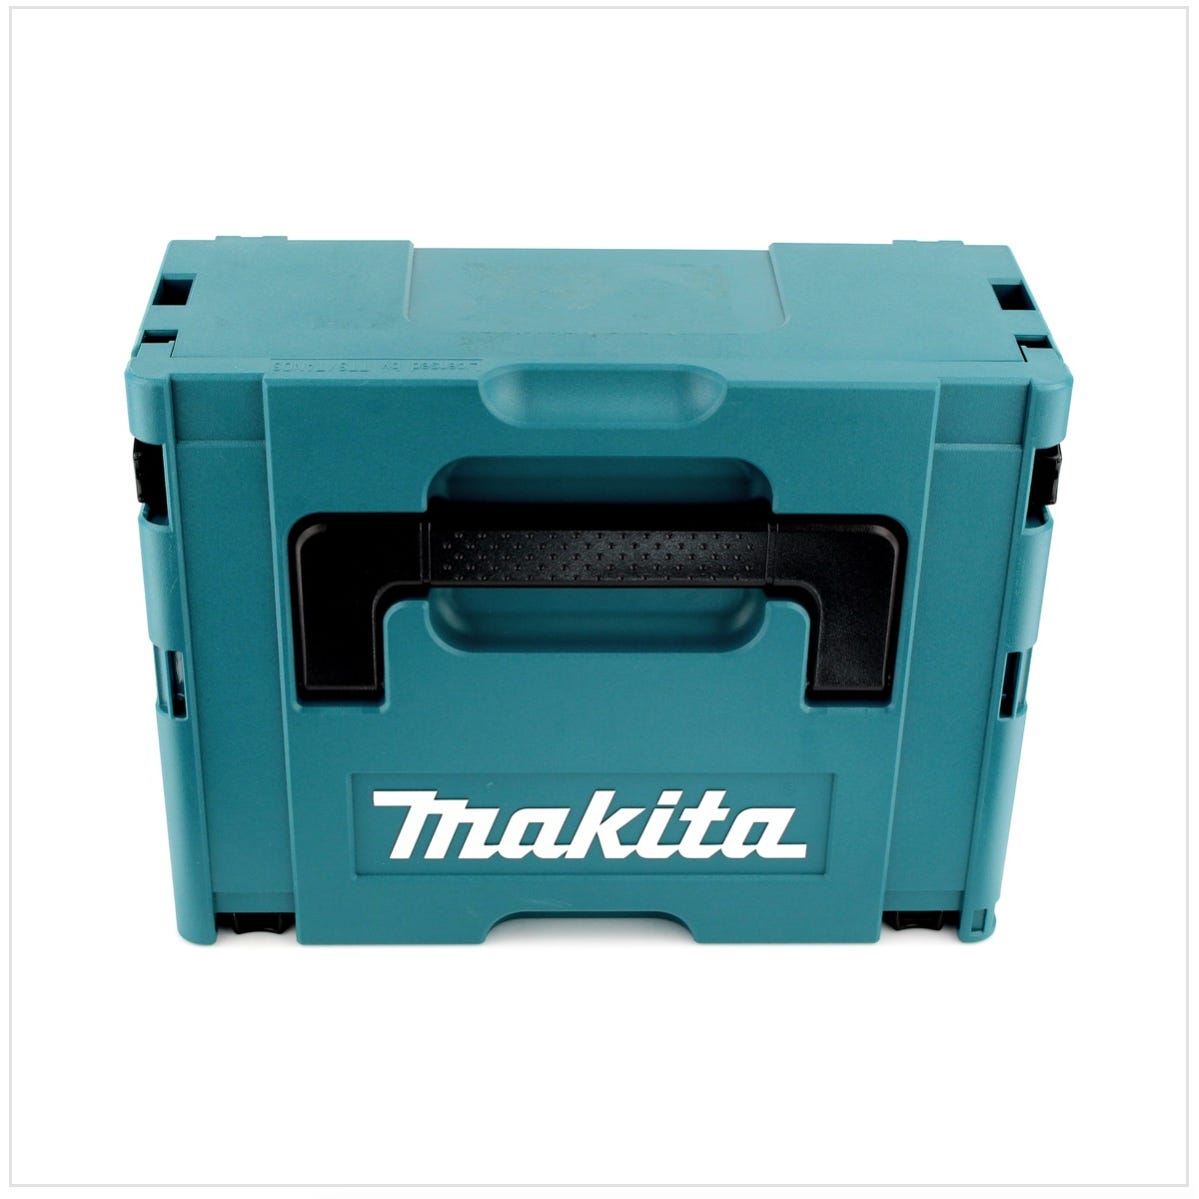 Makita DHP 483 RTJ 18 V Li-Ion Brushless Perceuse visseuse à percussion sans fil avec boîtier Makpac + 2x Batteries BL 1850 5,0 Ah + Chargeur DC18RC 2